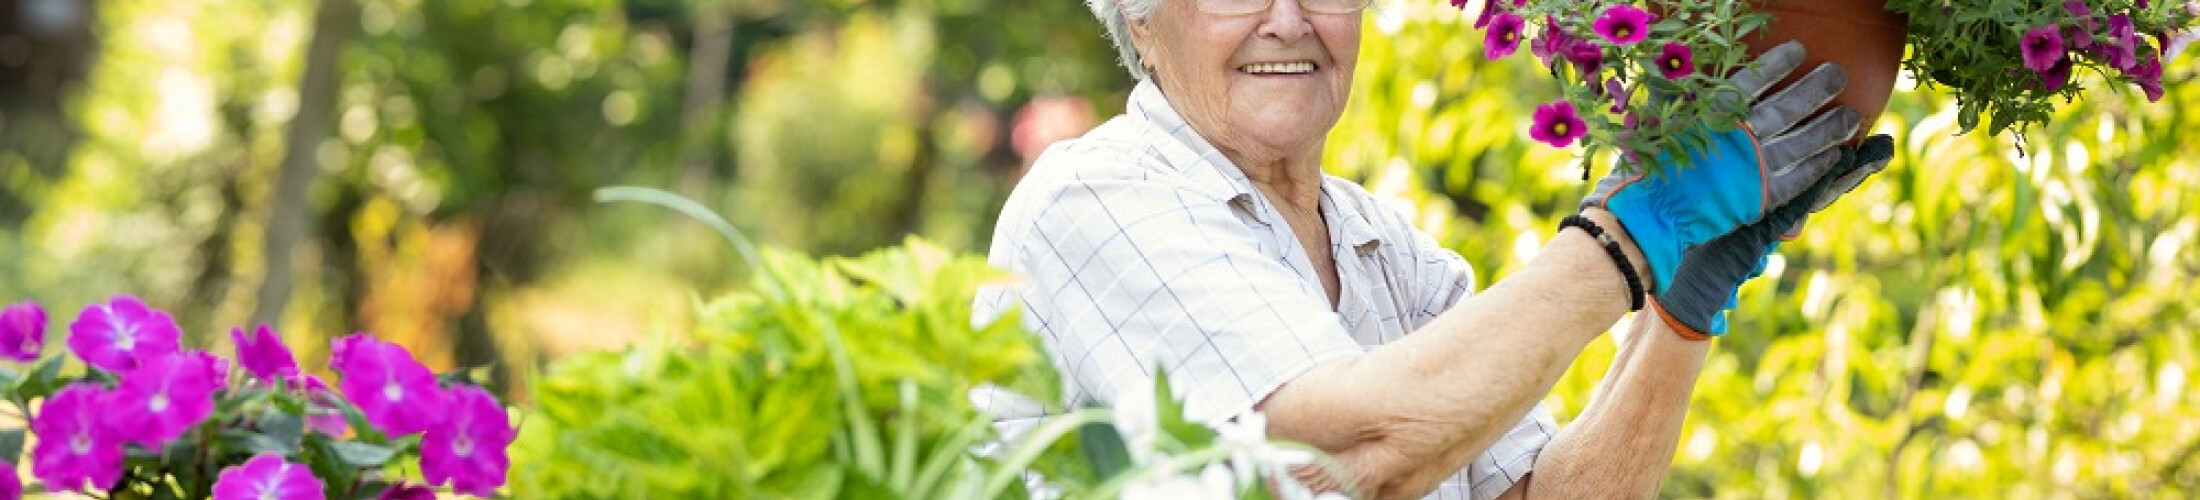 Personne âgée en train de jardiner 